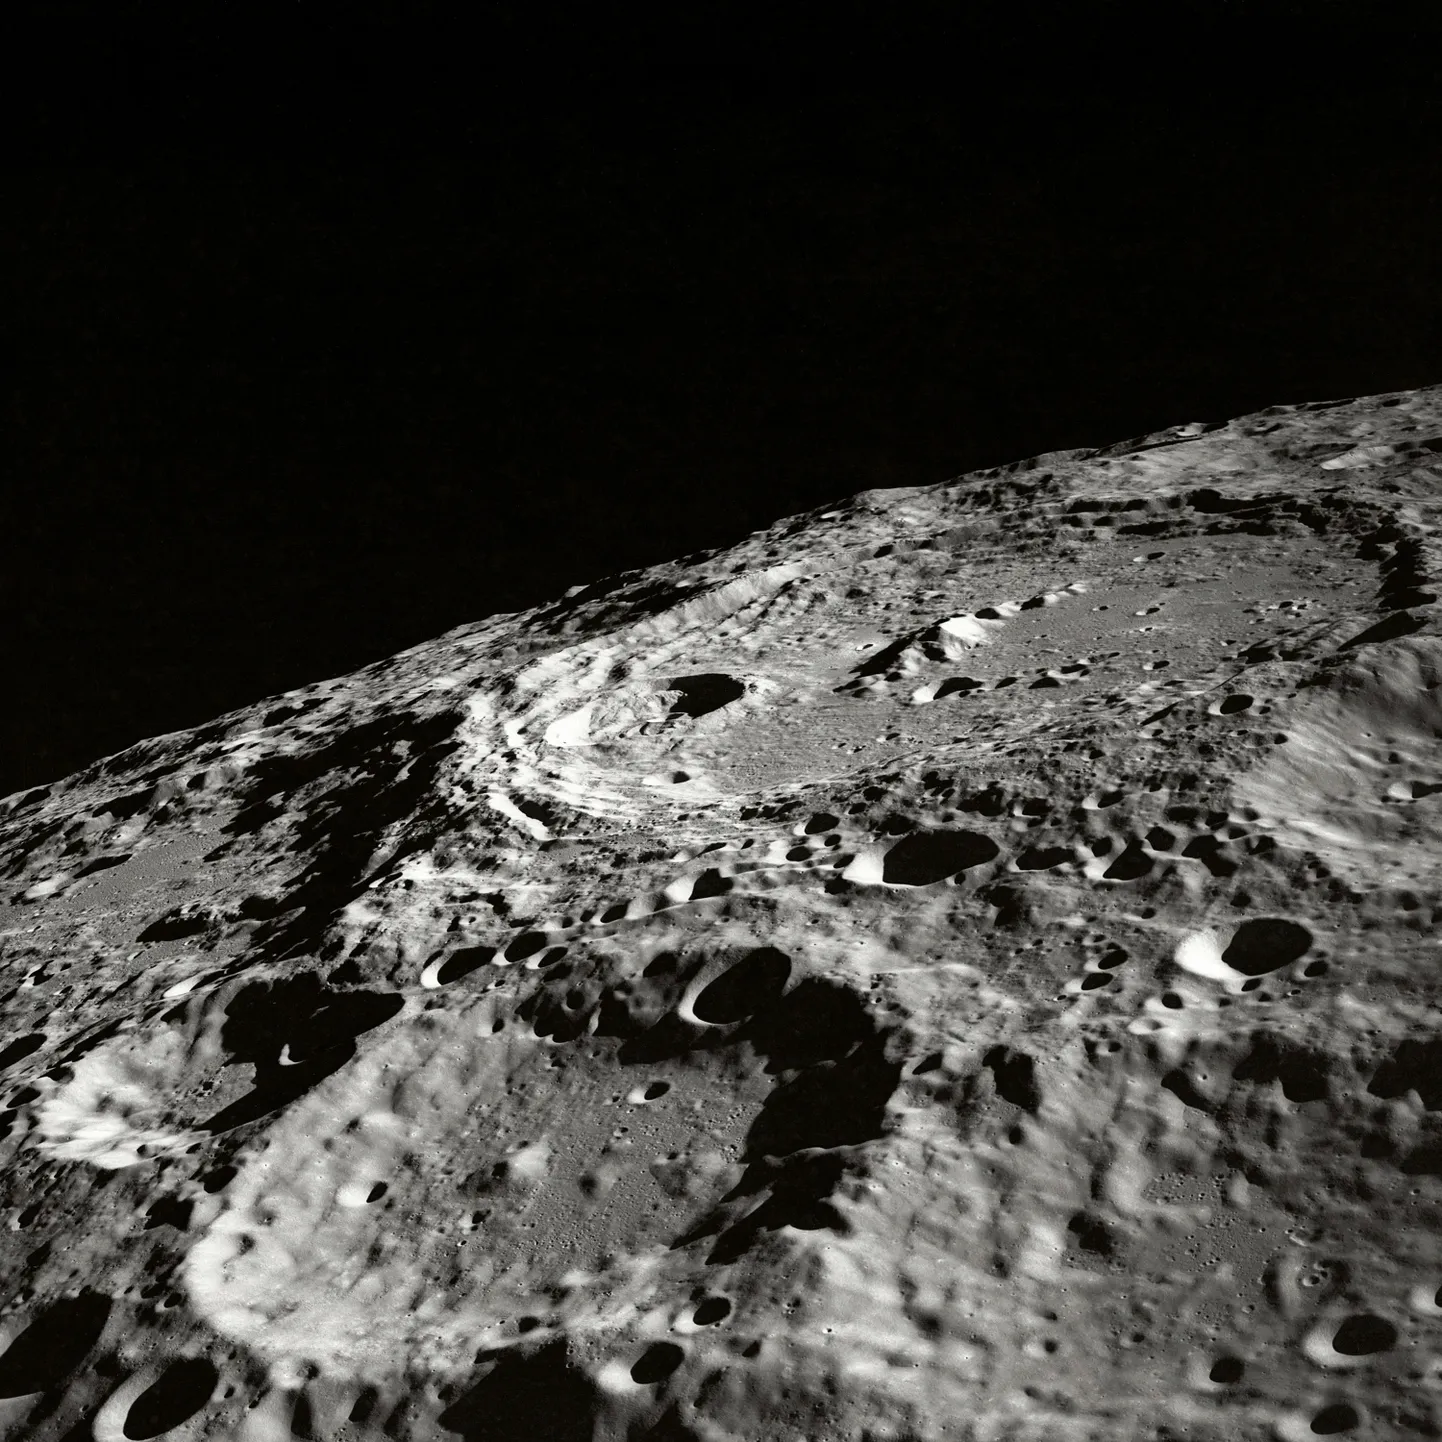 Jutt, et Kuu on seest õõnes sai alguse ilmselt NASA eksperimentidest, kus korraldati kuuvärin ja imestati selle üle, kui pikalt Kuu seejärel helises.